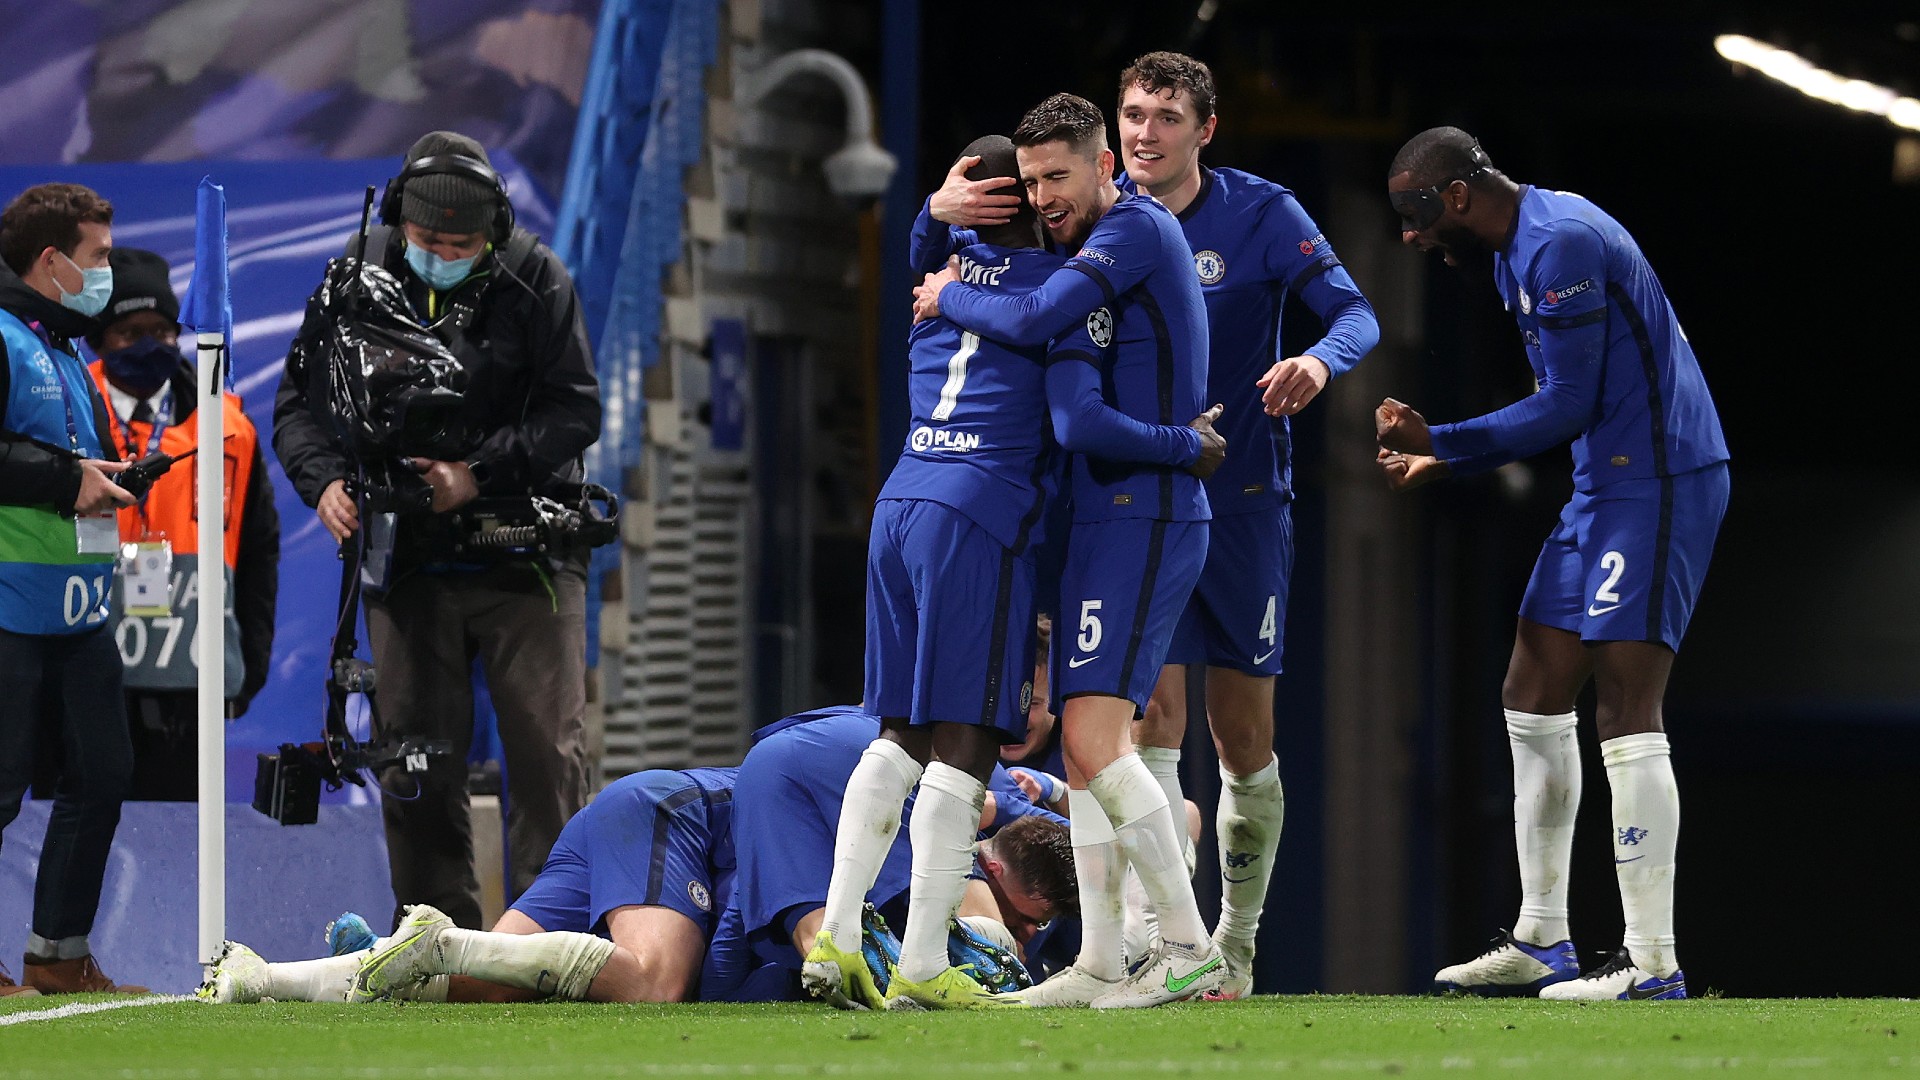 Chelsea passa para final contra Manchester City após vitória contra Real Madrid